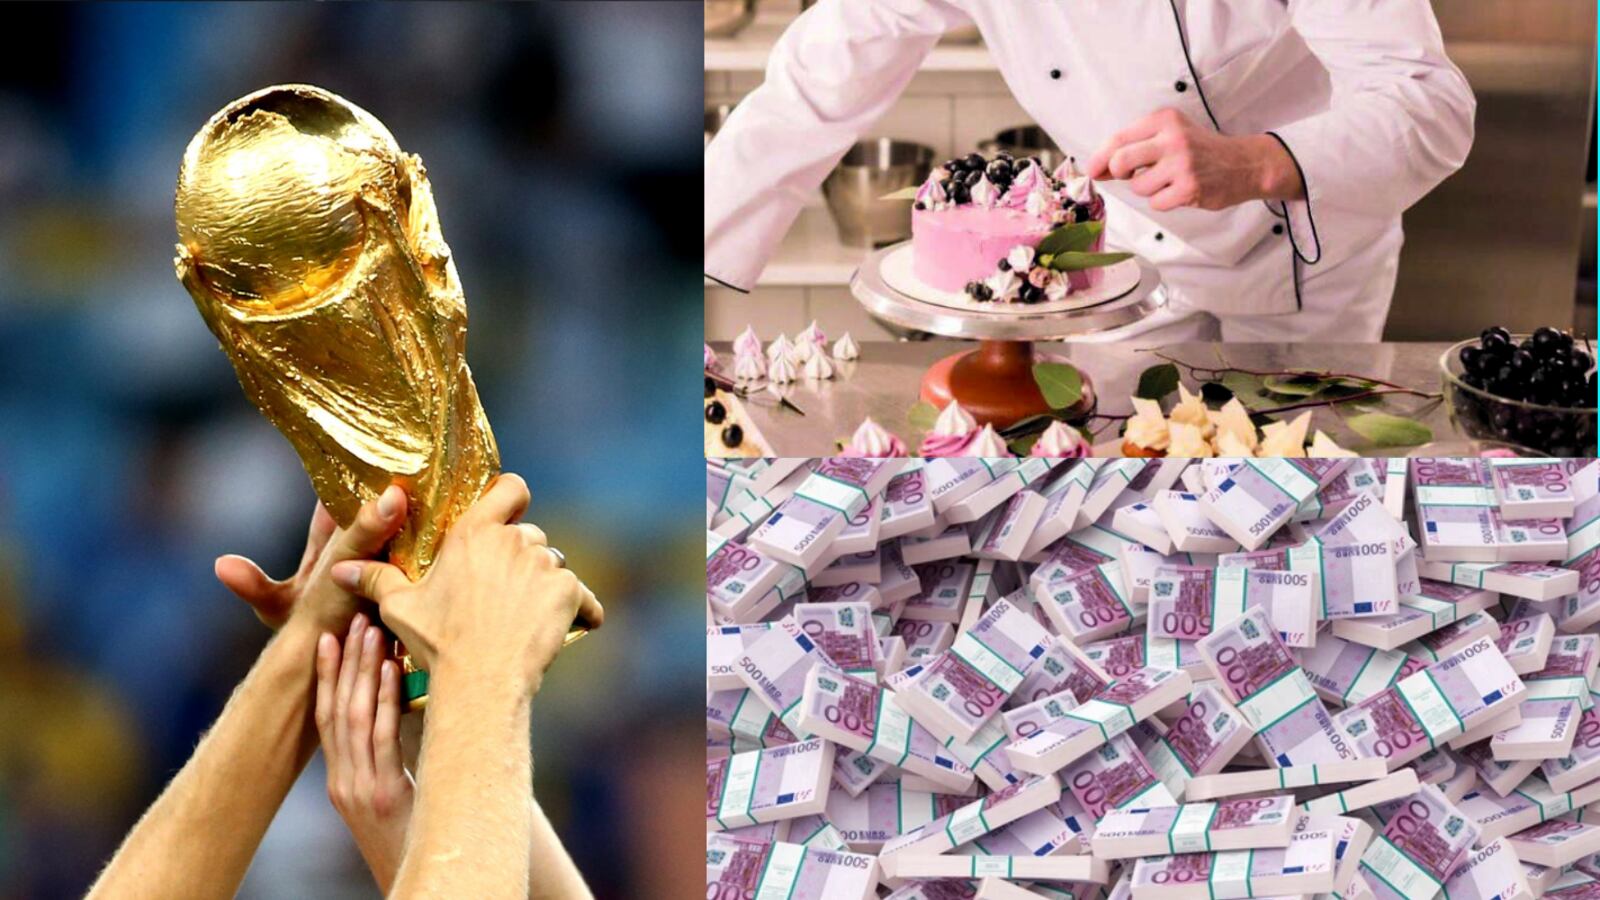 Fue campeón del mundo, ganó millones de euros y ahora vende tortas para vivir